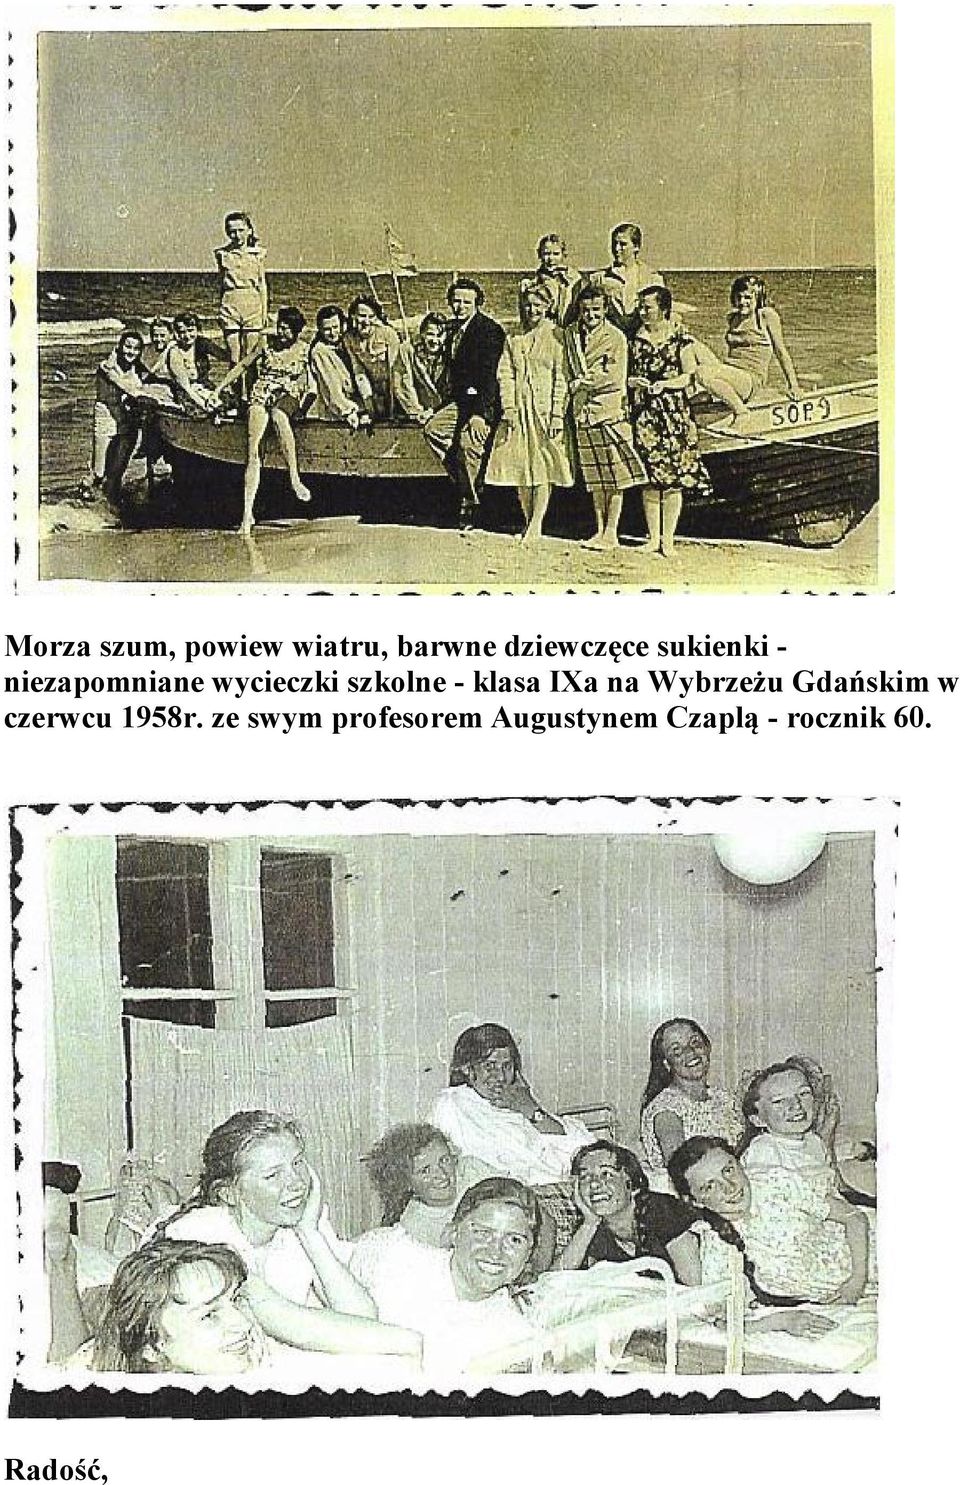 klasa IXa na Wybrzeżu Gdańskim w czerwcu 1958r.